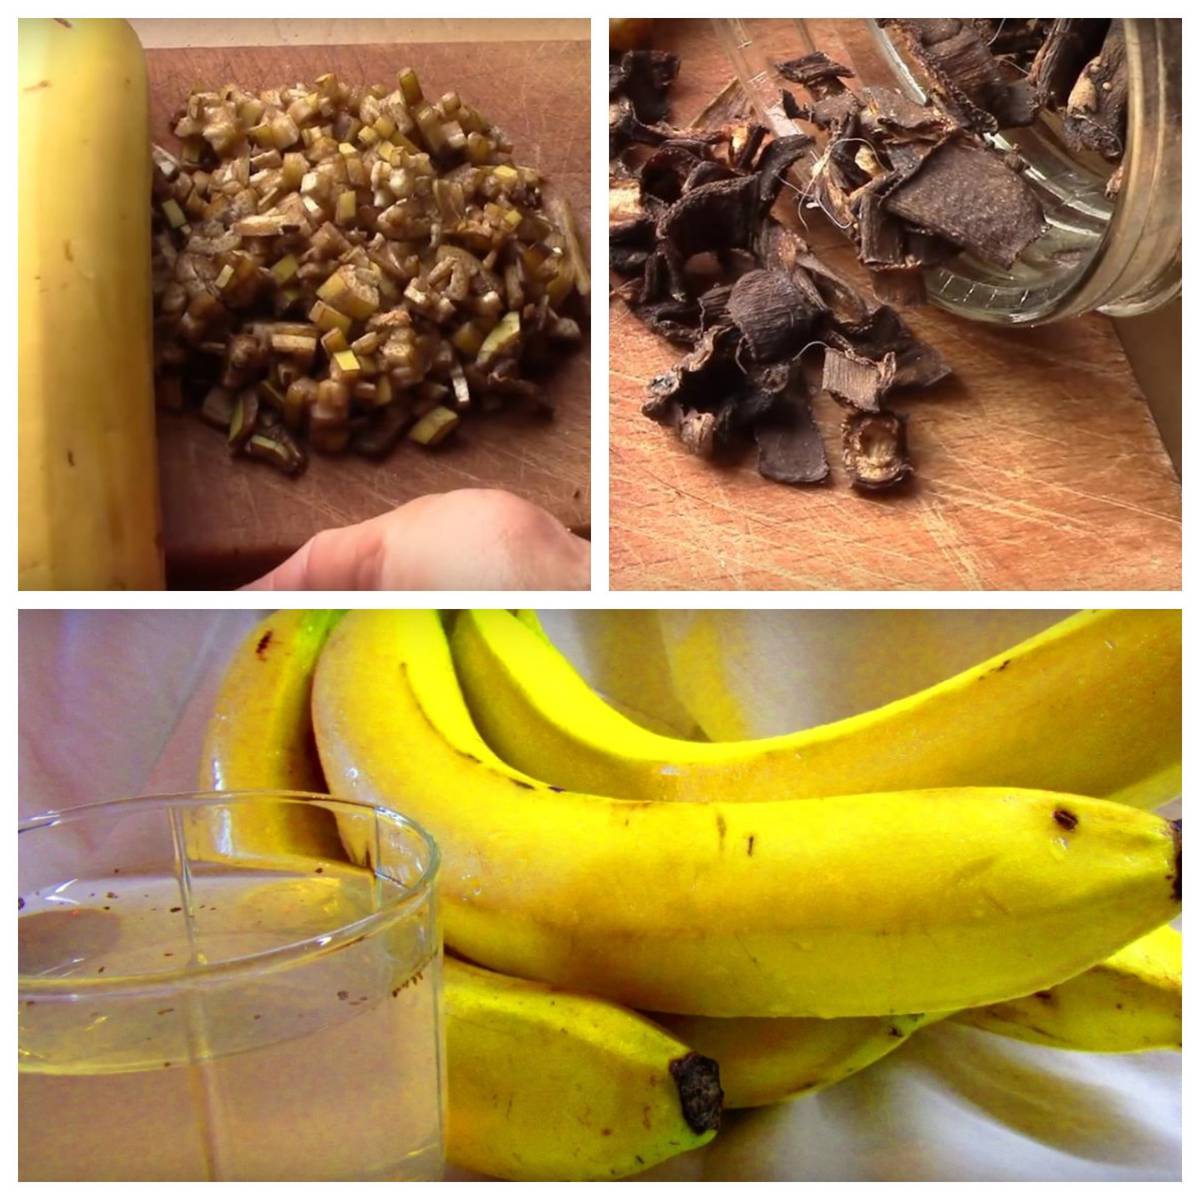 Удобрения из банановой кожуры для комнатных растений – инструкция по применению